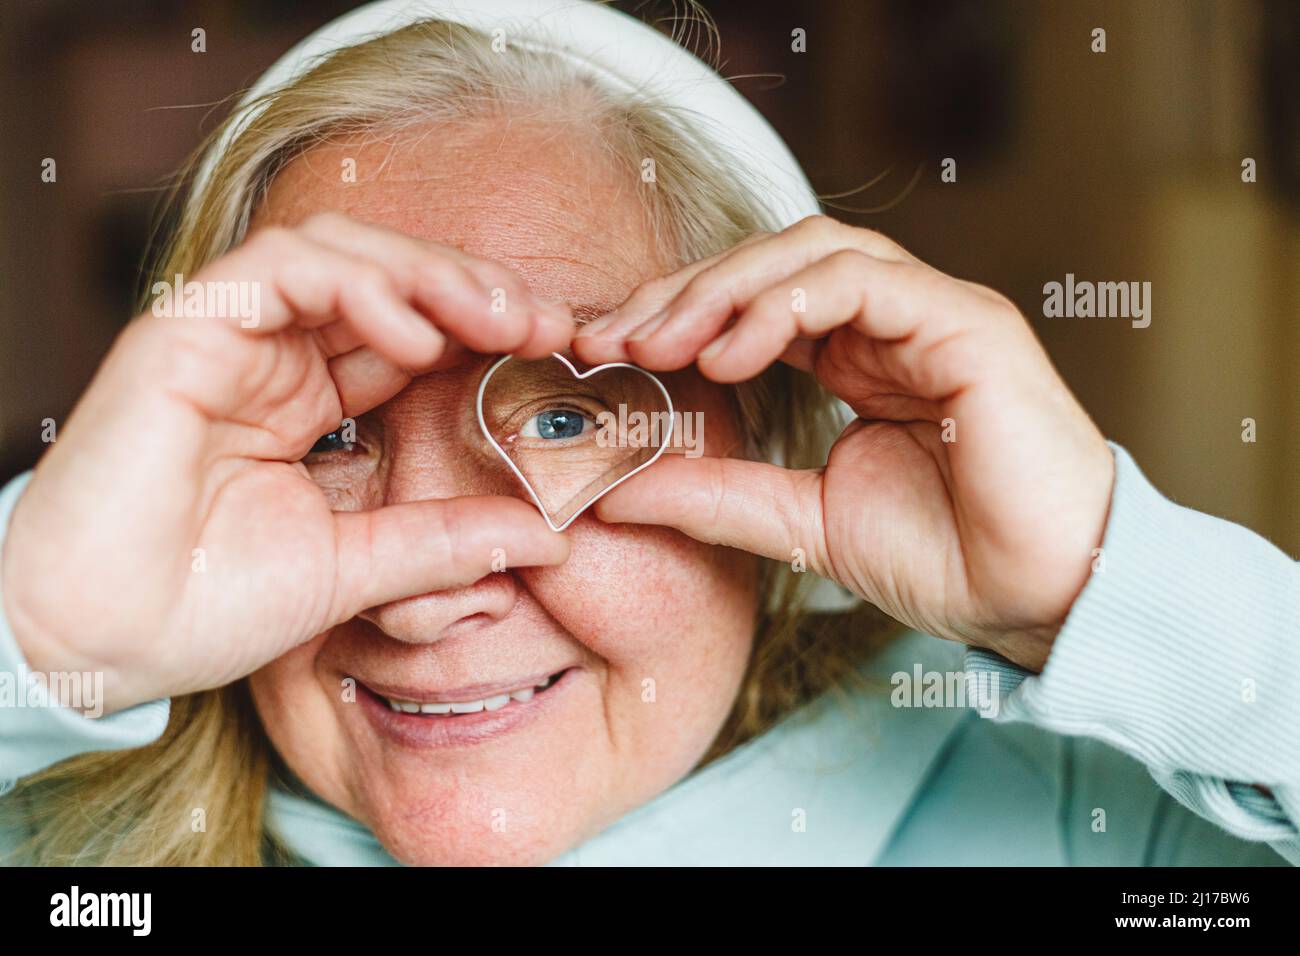 Lächelnde ältere Frau, die durch einen herzförmigen Ausstecher schaut Stockfoto